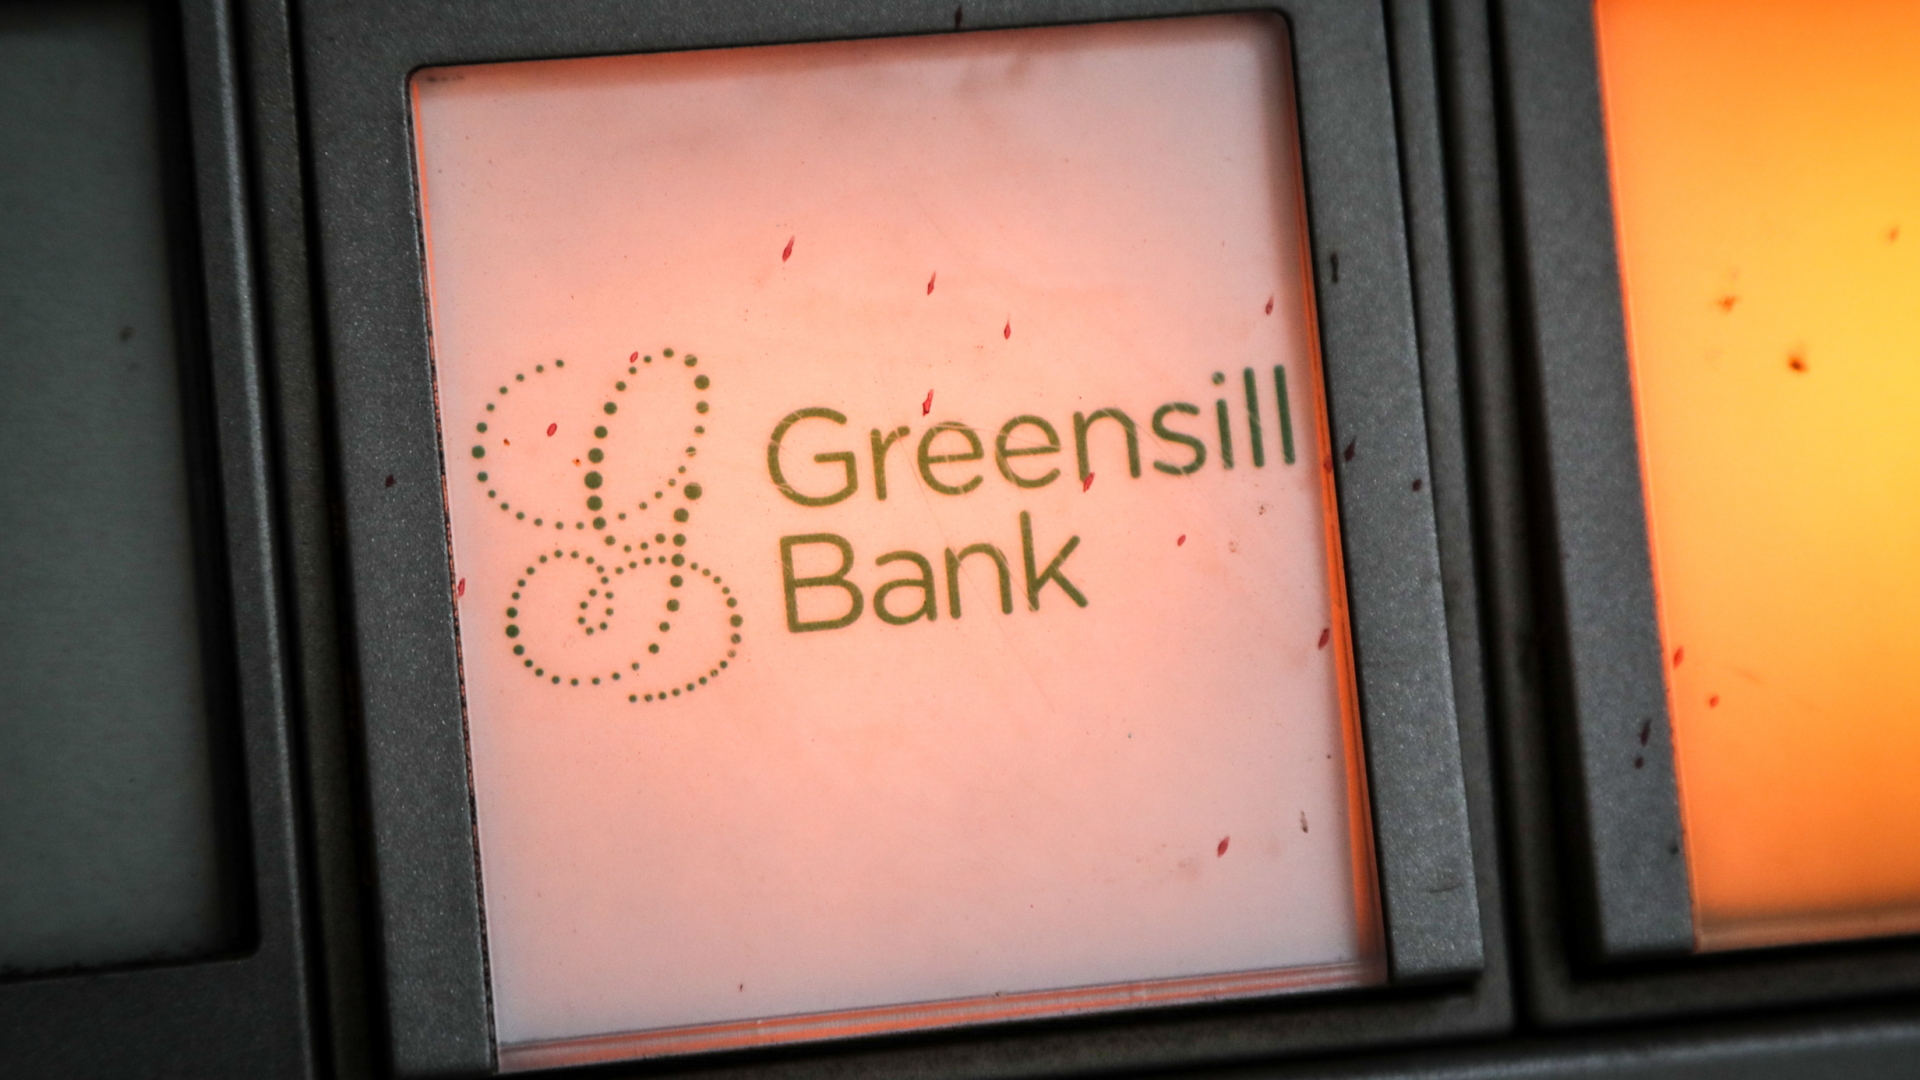 Türklingel mit der Aufschrift "Greensill Bank" | EPA